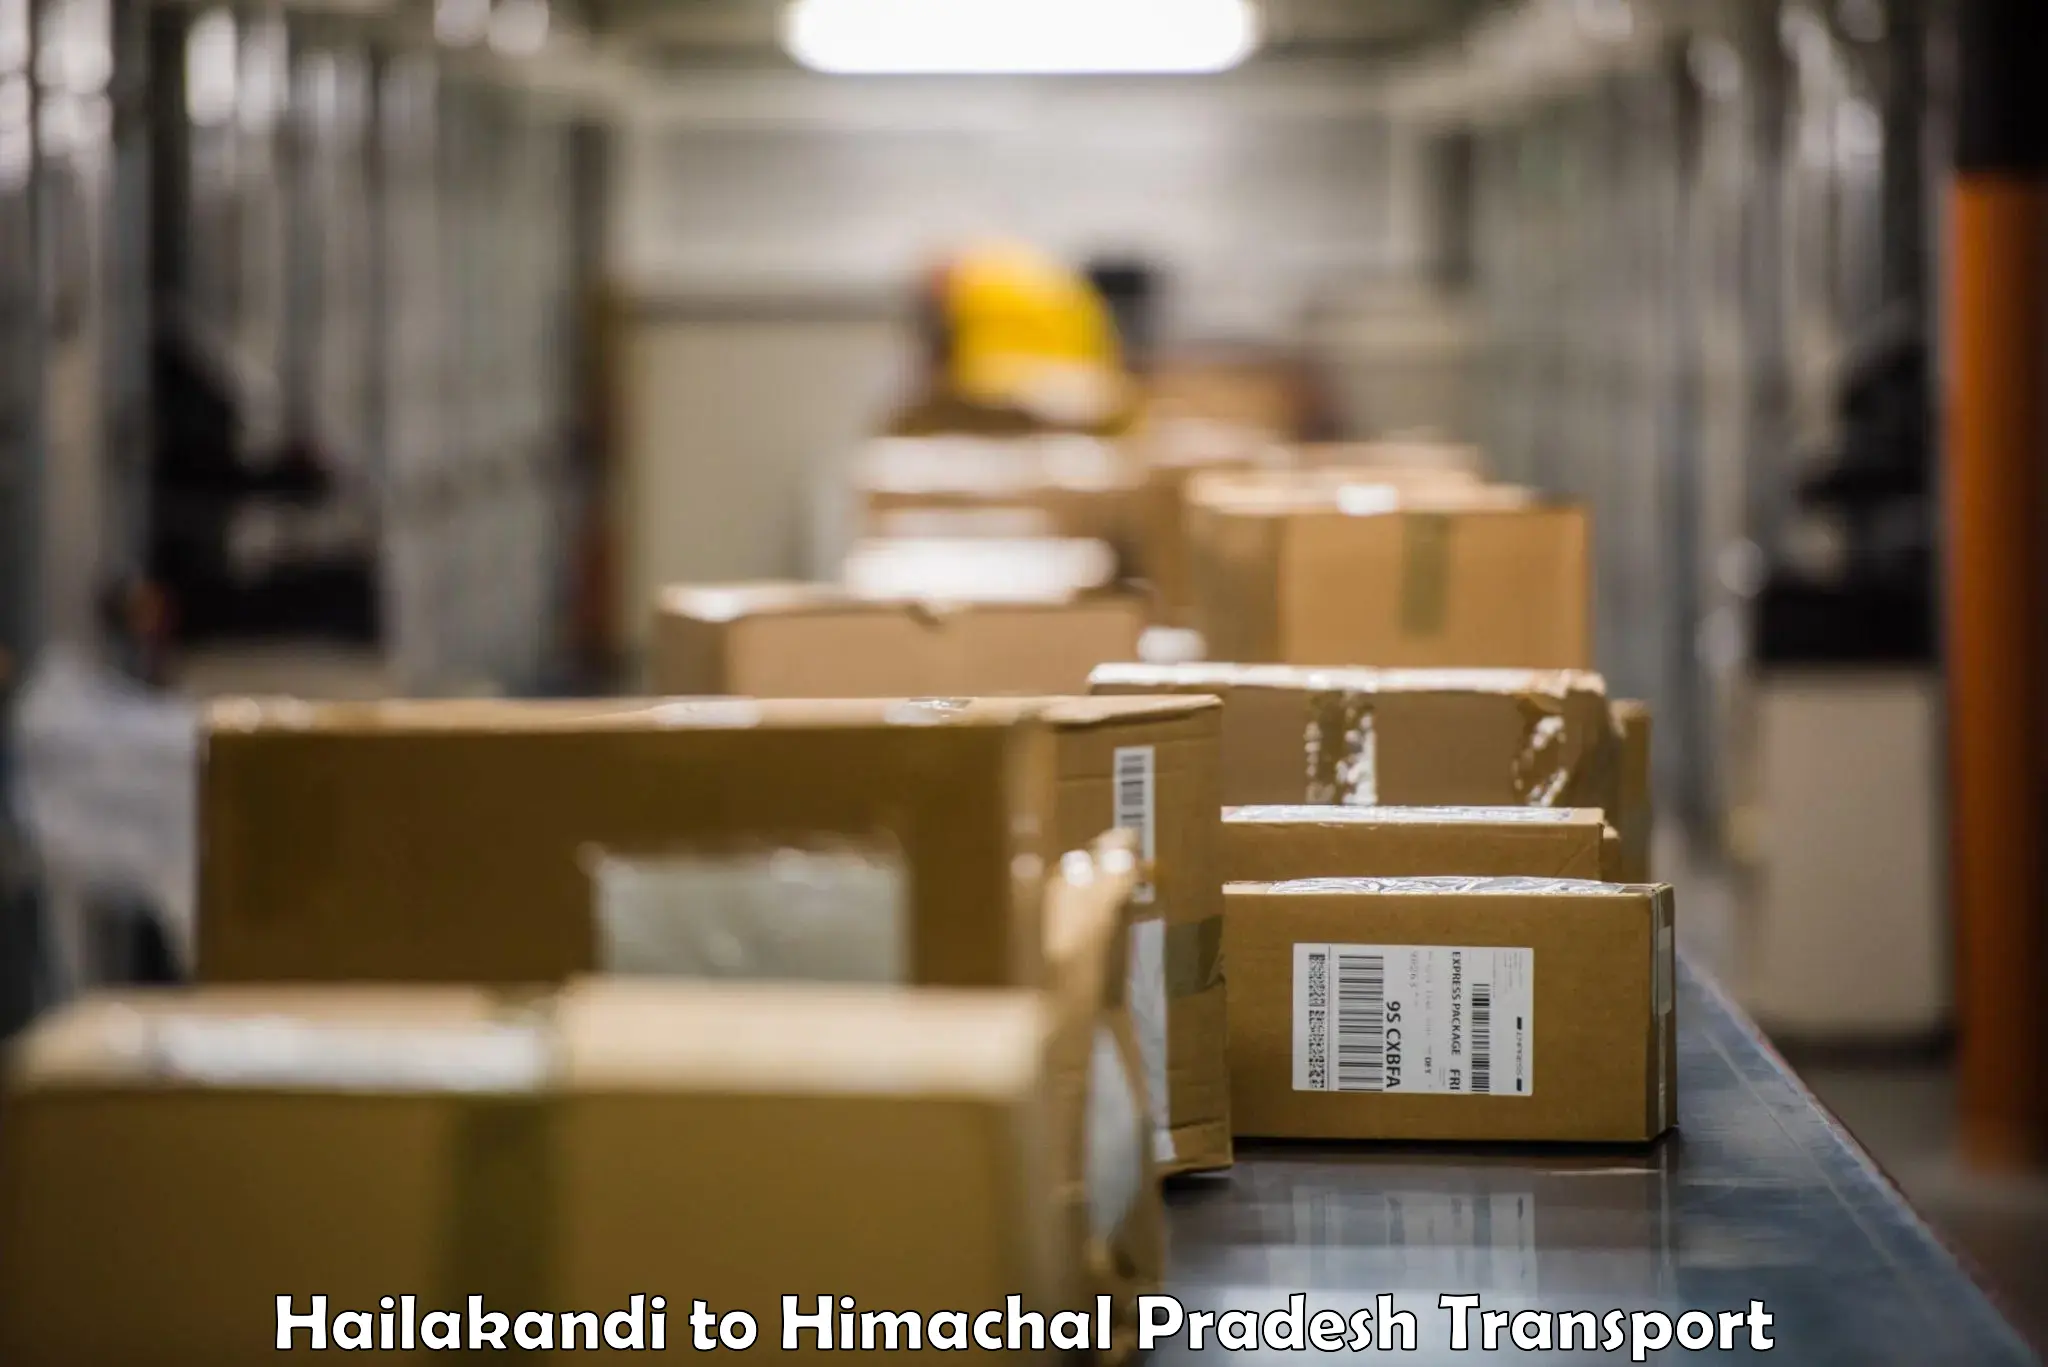 Delivery service Hailakandi to Shahpur Kangra